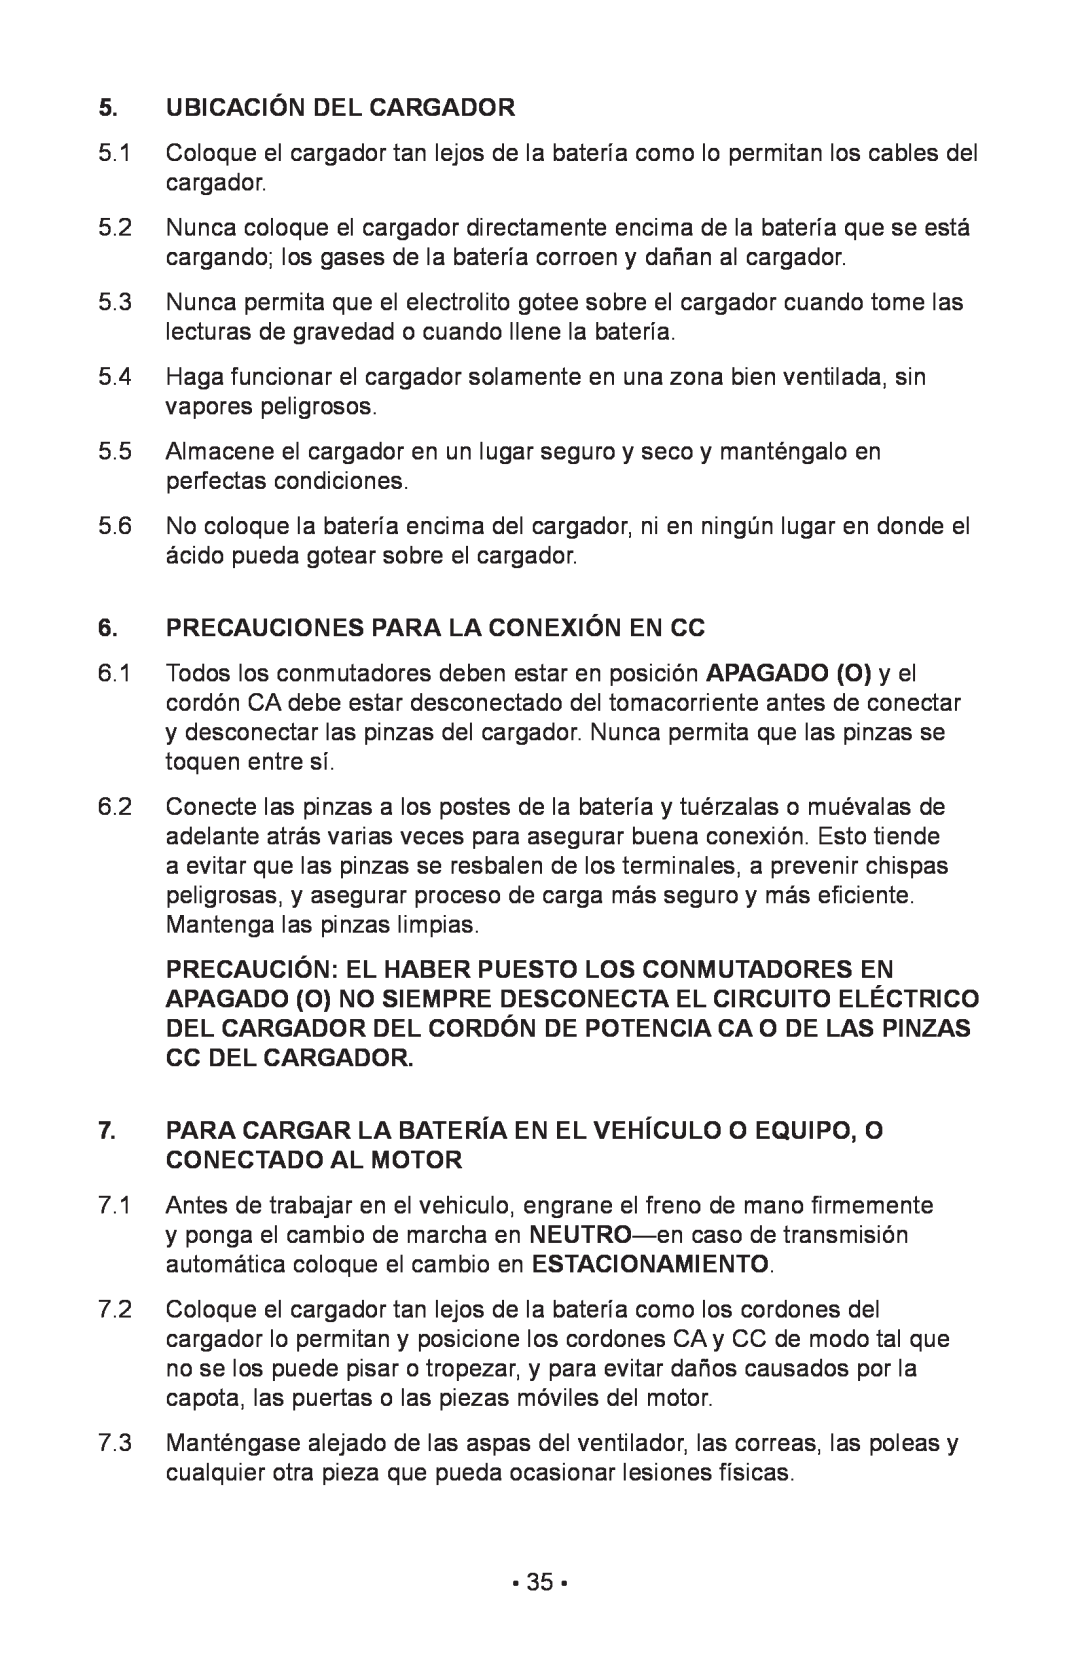 Schumacher 85-716 instruction manual Ubicación Del Cargador, Precauciones Para La Conexión En Cc 